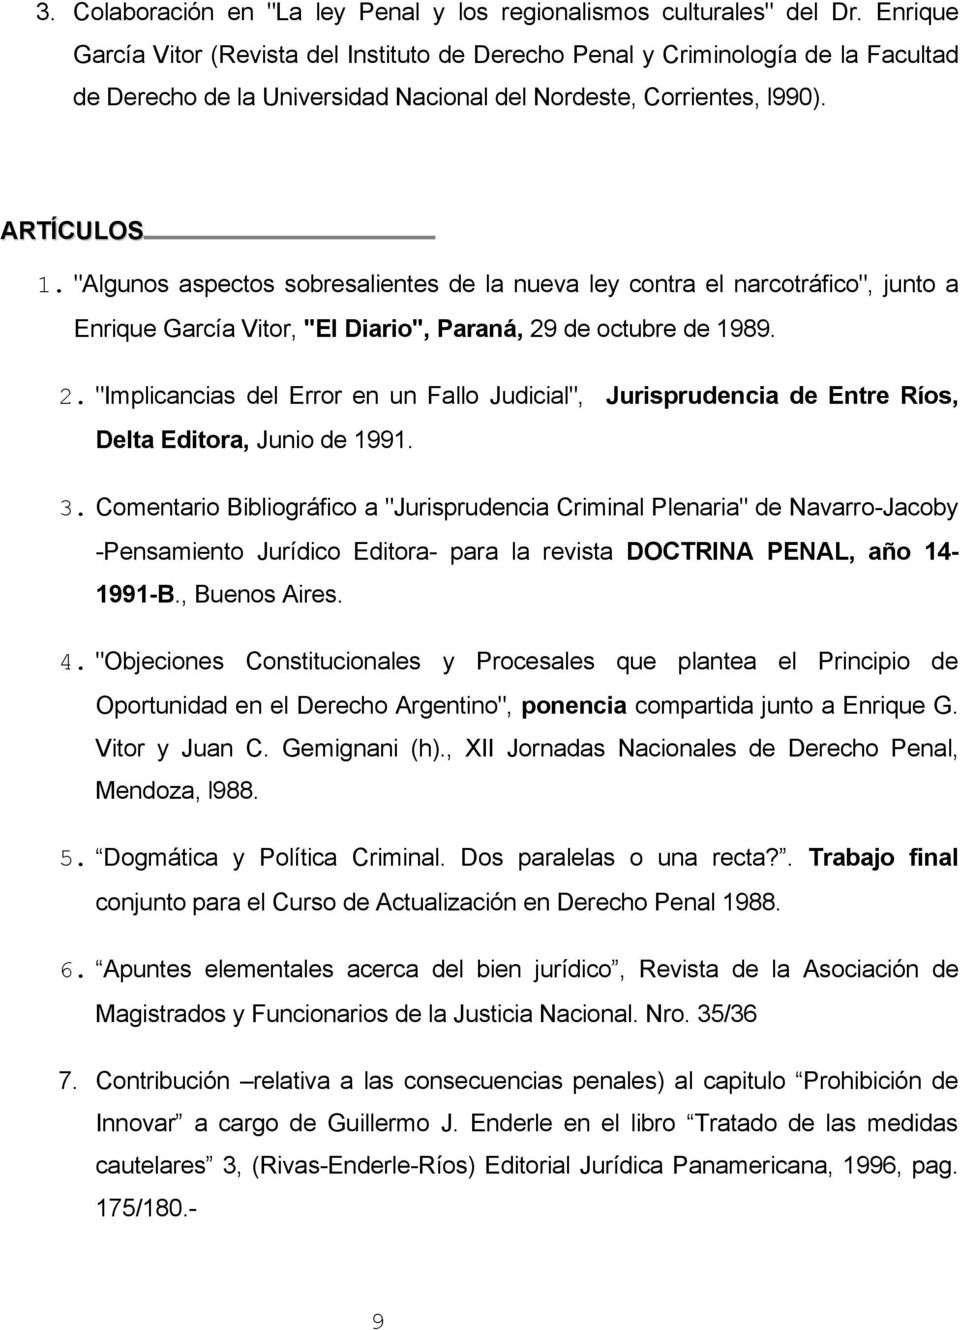 "Algunos aspectos sobresalientes de la nueva ley contra el narcotráfico", junto a Enrique García Vitor, "El Diario", Paraná, 29